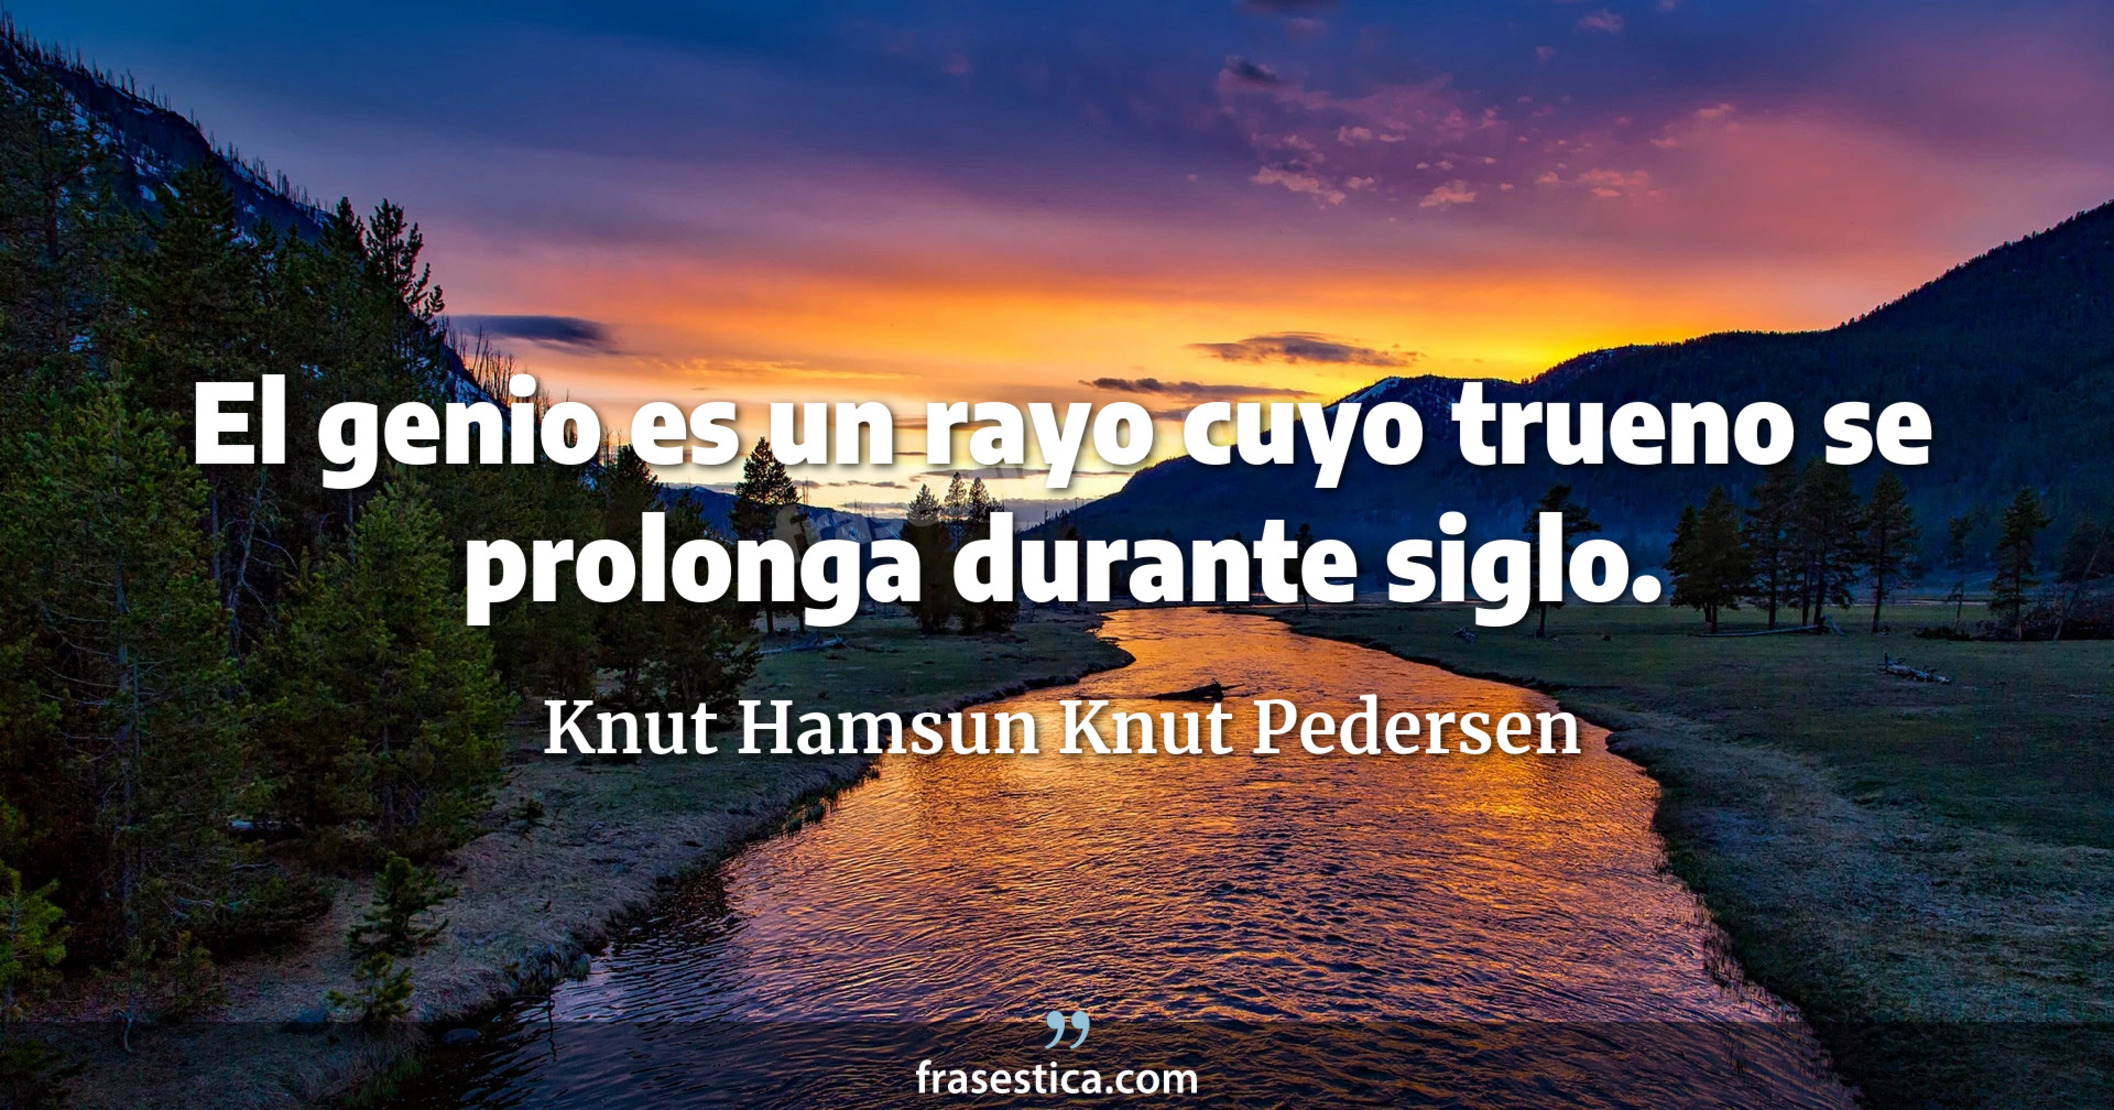 El genio es un rayo cuyo trueno se prolonga durante siglo. - Knut Hamsun Knut Pedersen